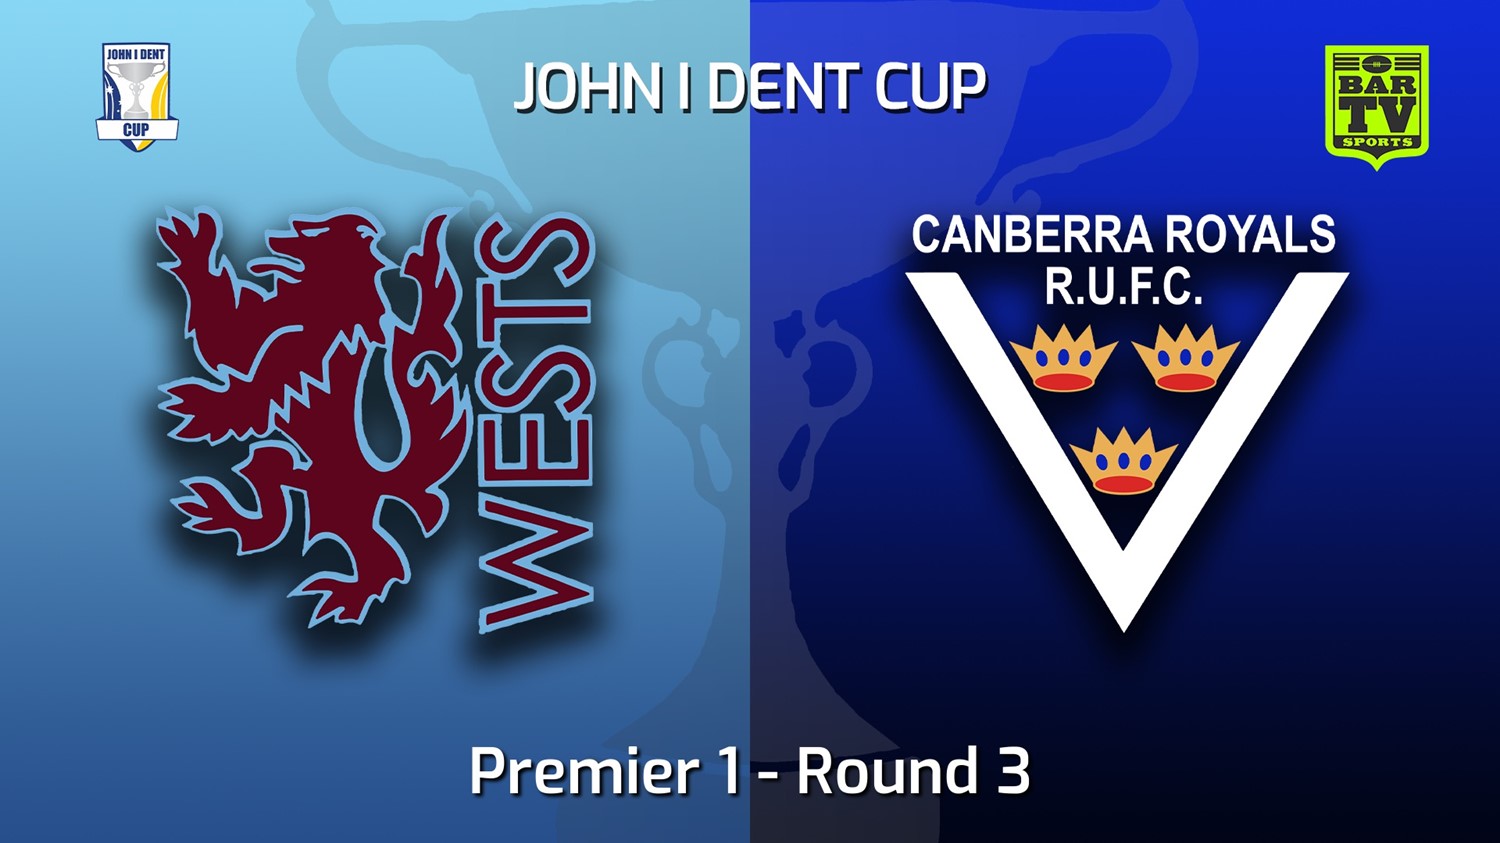 220507-John I Dent (ACT) Round 3 - Premier 1 - Wests Lions v Canberra Royals Slate Image